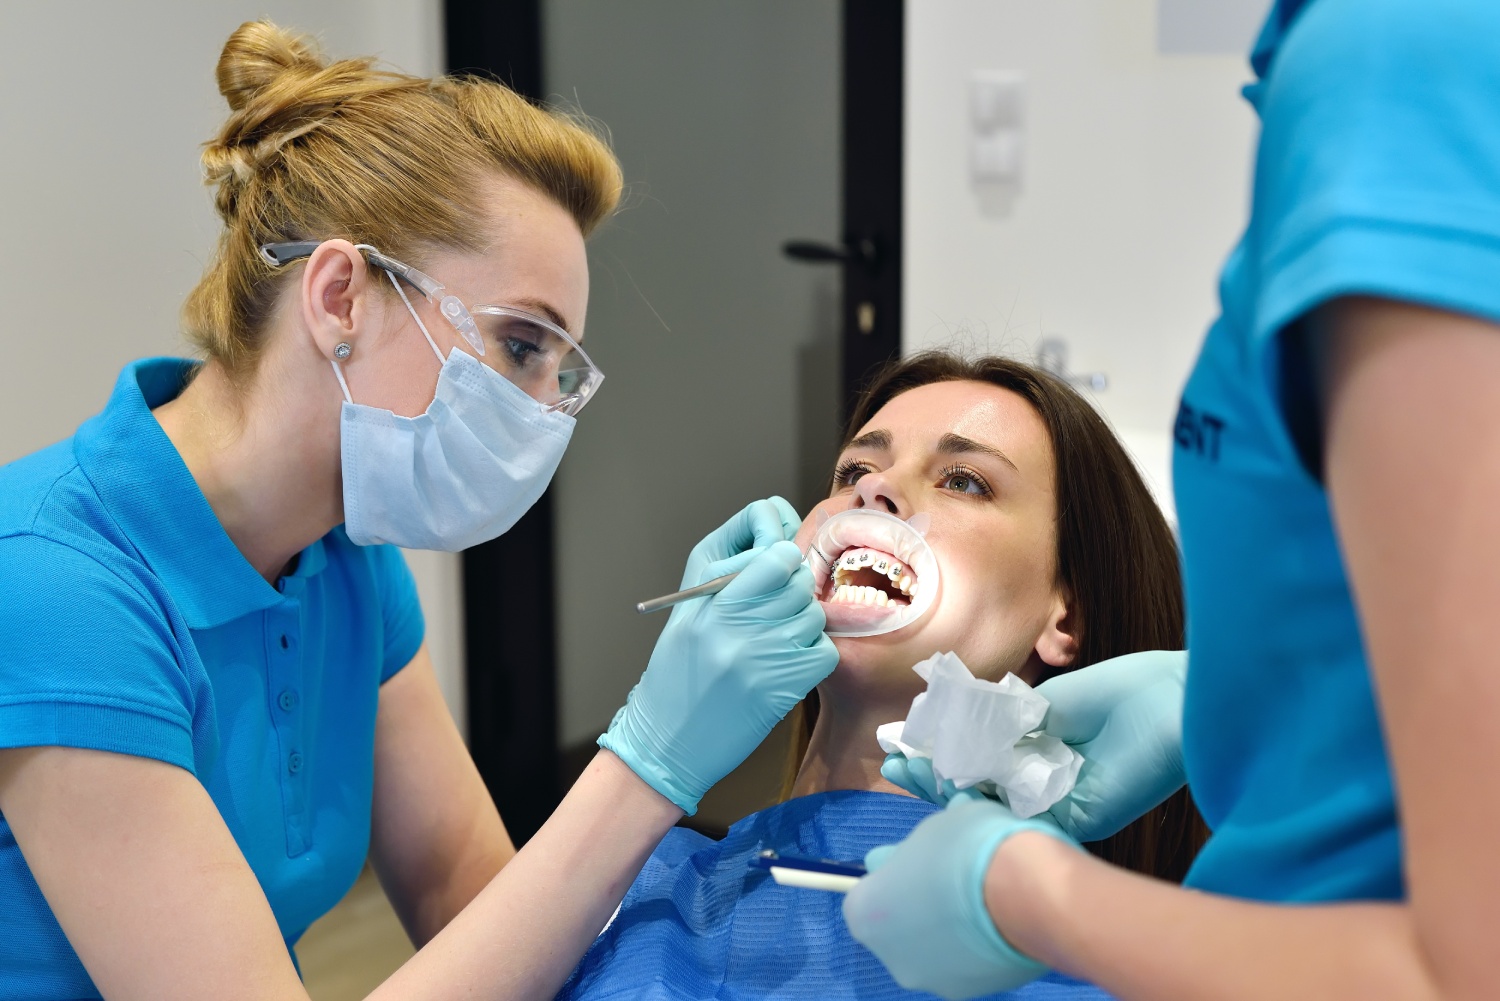 Quando você deve procurar um ortodontista?